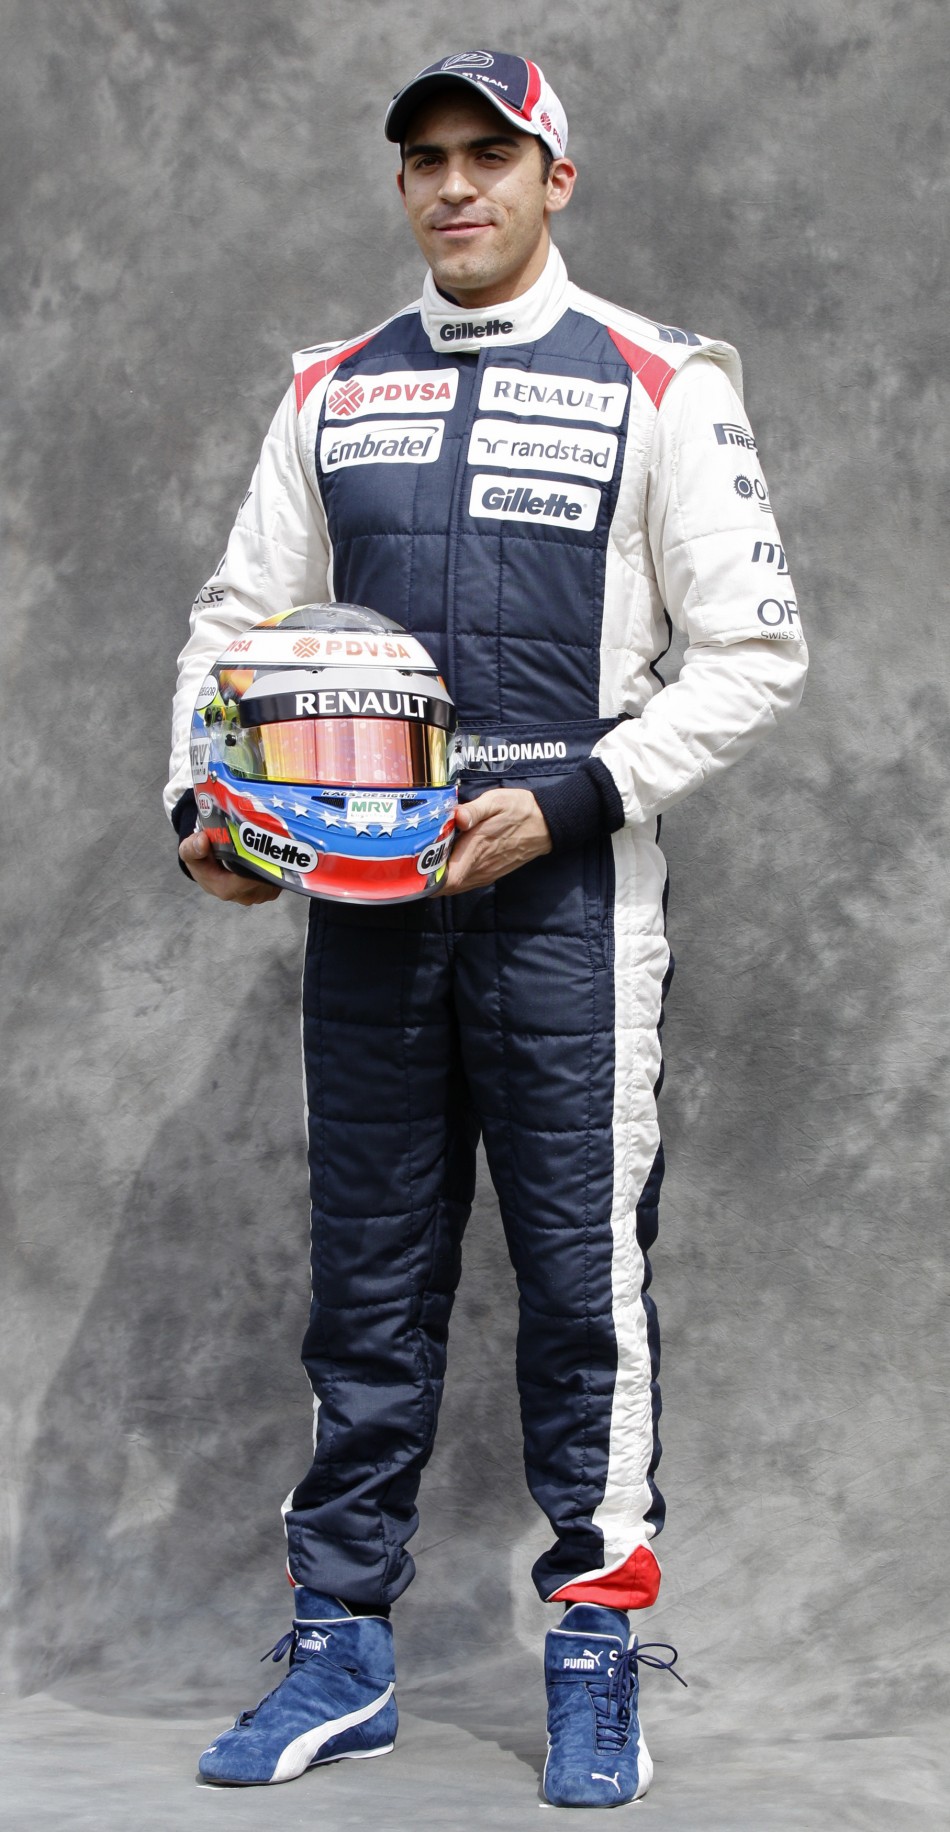 Williams Formula One driver Maldonado poses prior to the Australian F1 Grand Prix at the Albert Park circuit in Melbourne